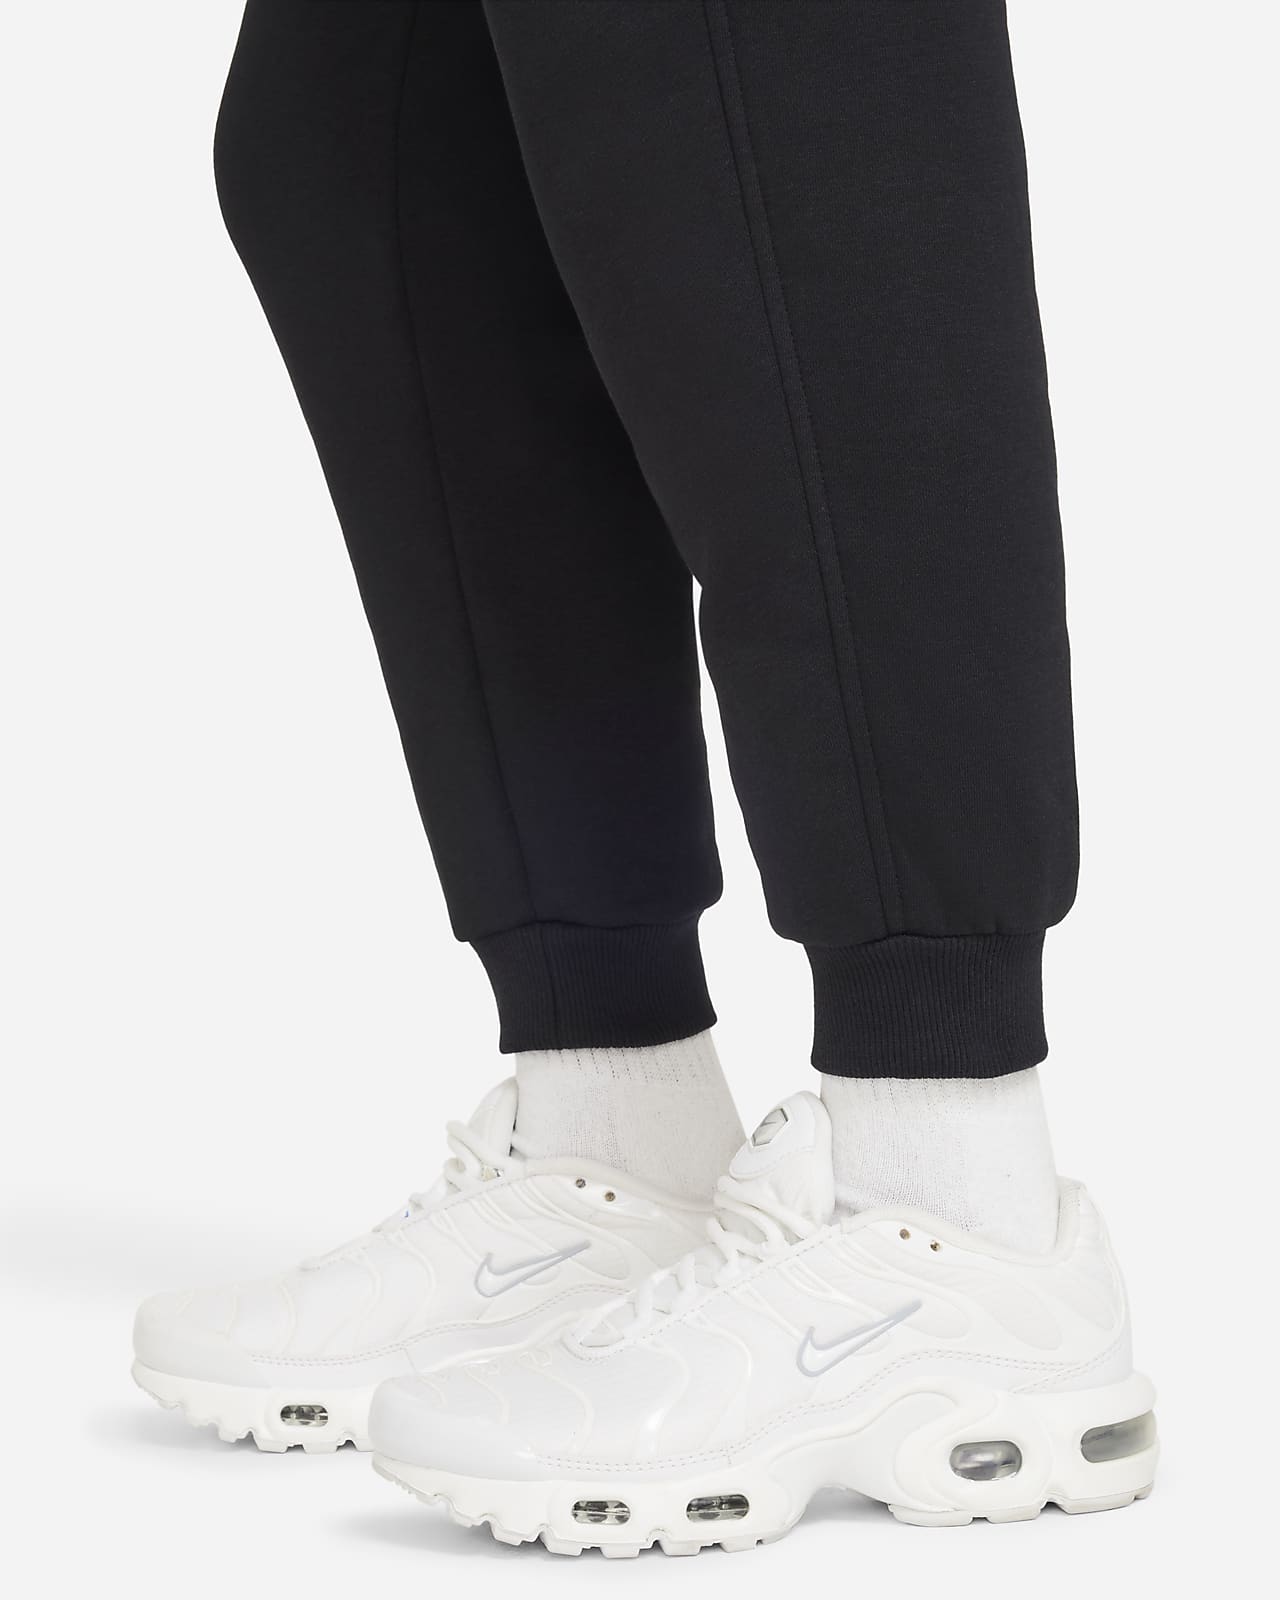 Nike Sportswear Club Fleece Older Kids' Trousers